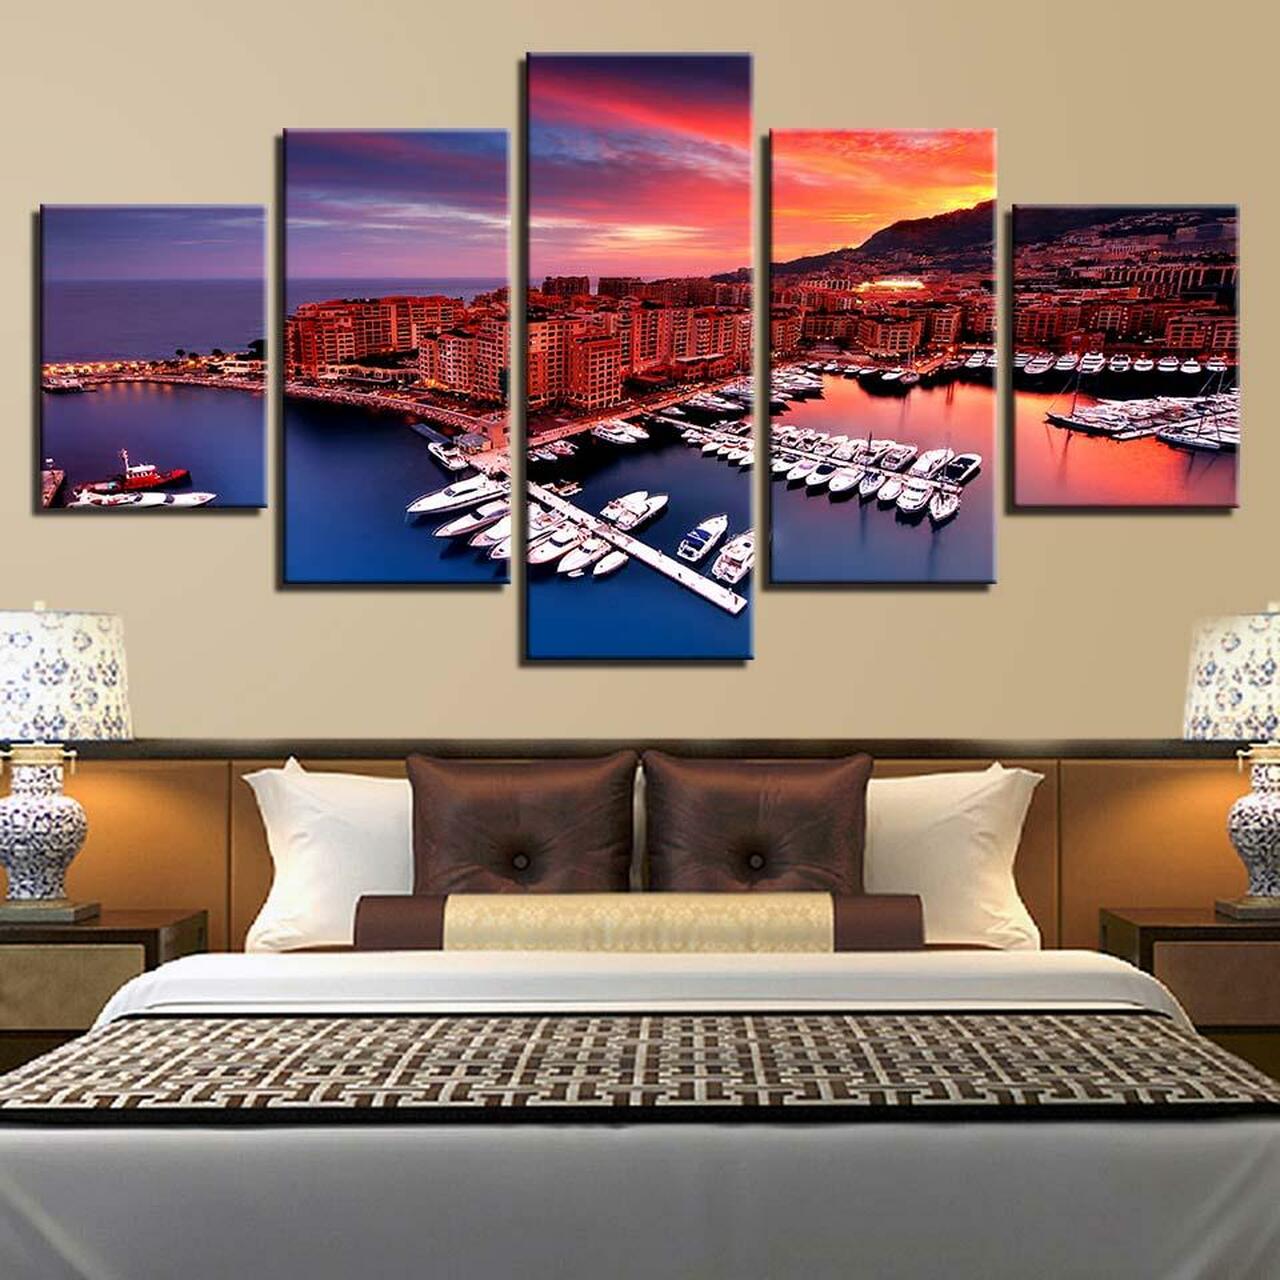 yachts on harbor 5 pices peinture sur toile impression sur toile toile art pour la dcoration intrieuret8qvk